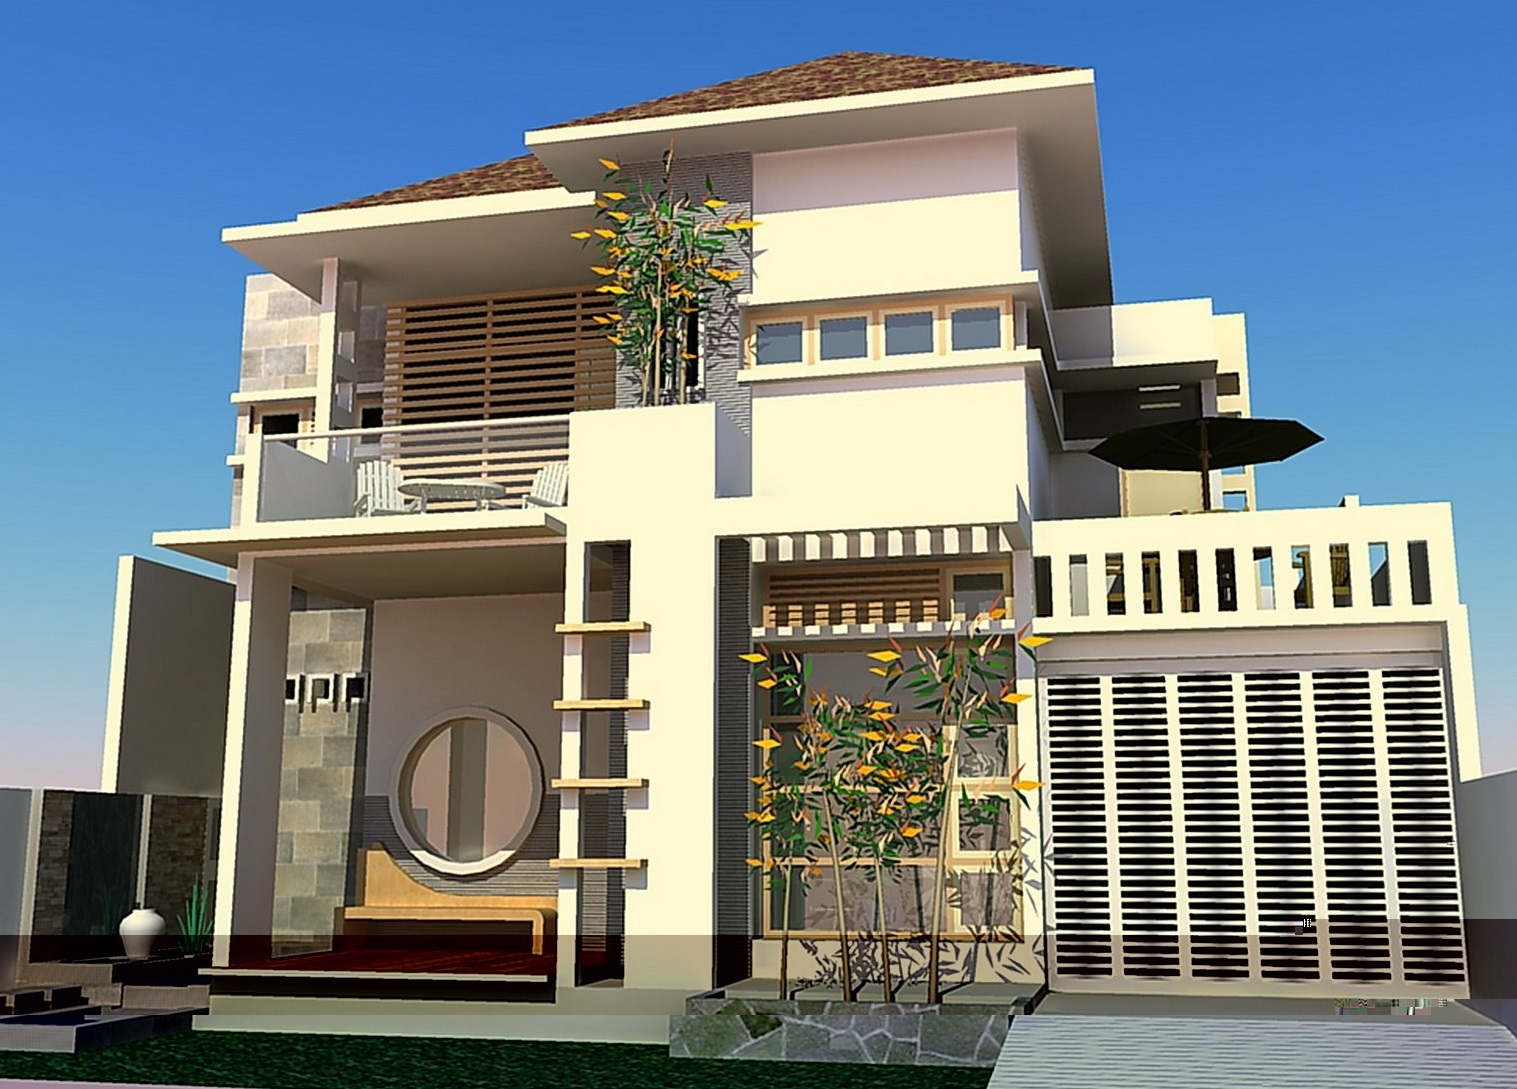 7 Desain Rumah Minimalis Paling Popular Terbaru 2015 Lantai 1 Dan 2